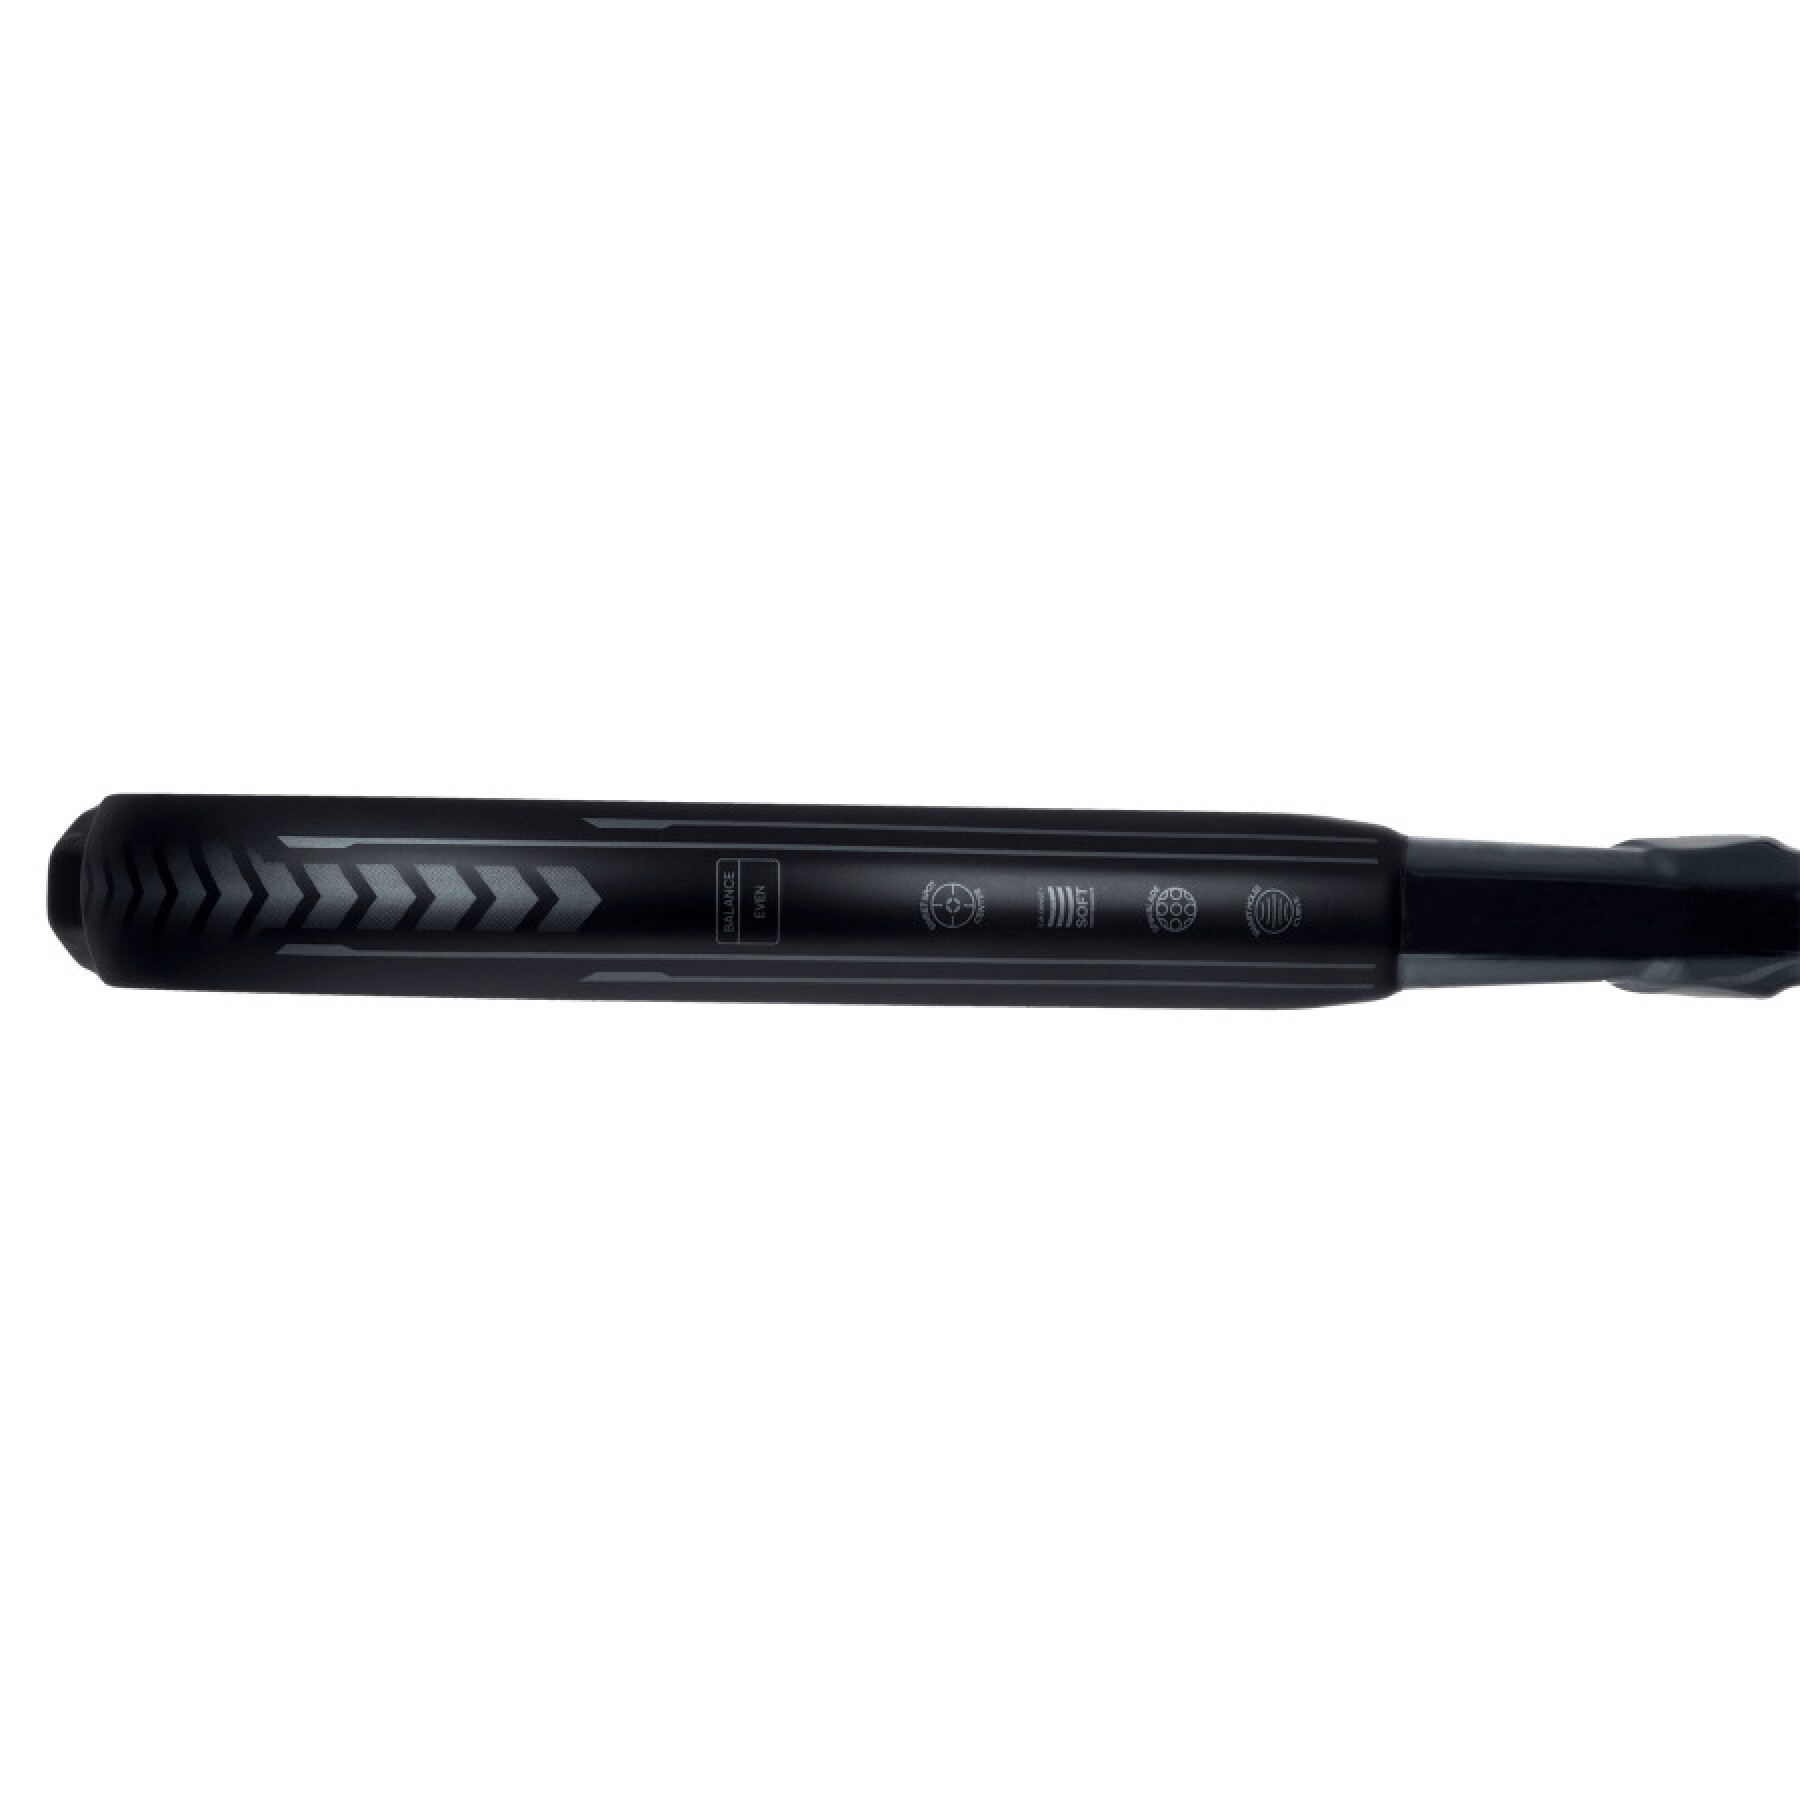 Paddle racket adidas Metalbone Carbon CTRL 3.3